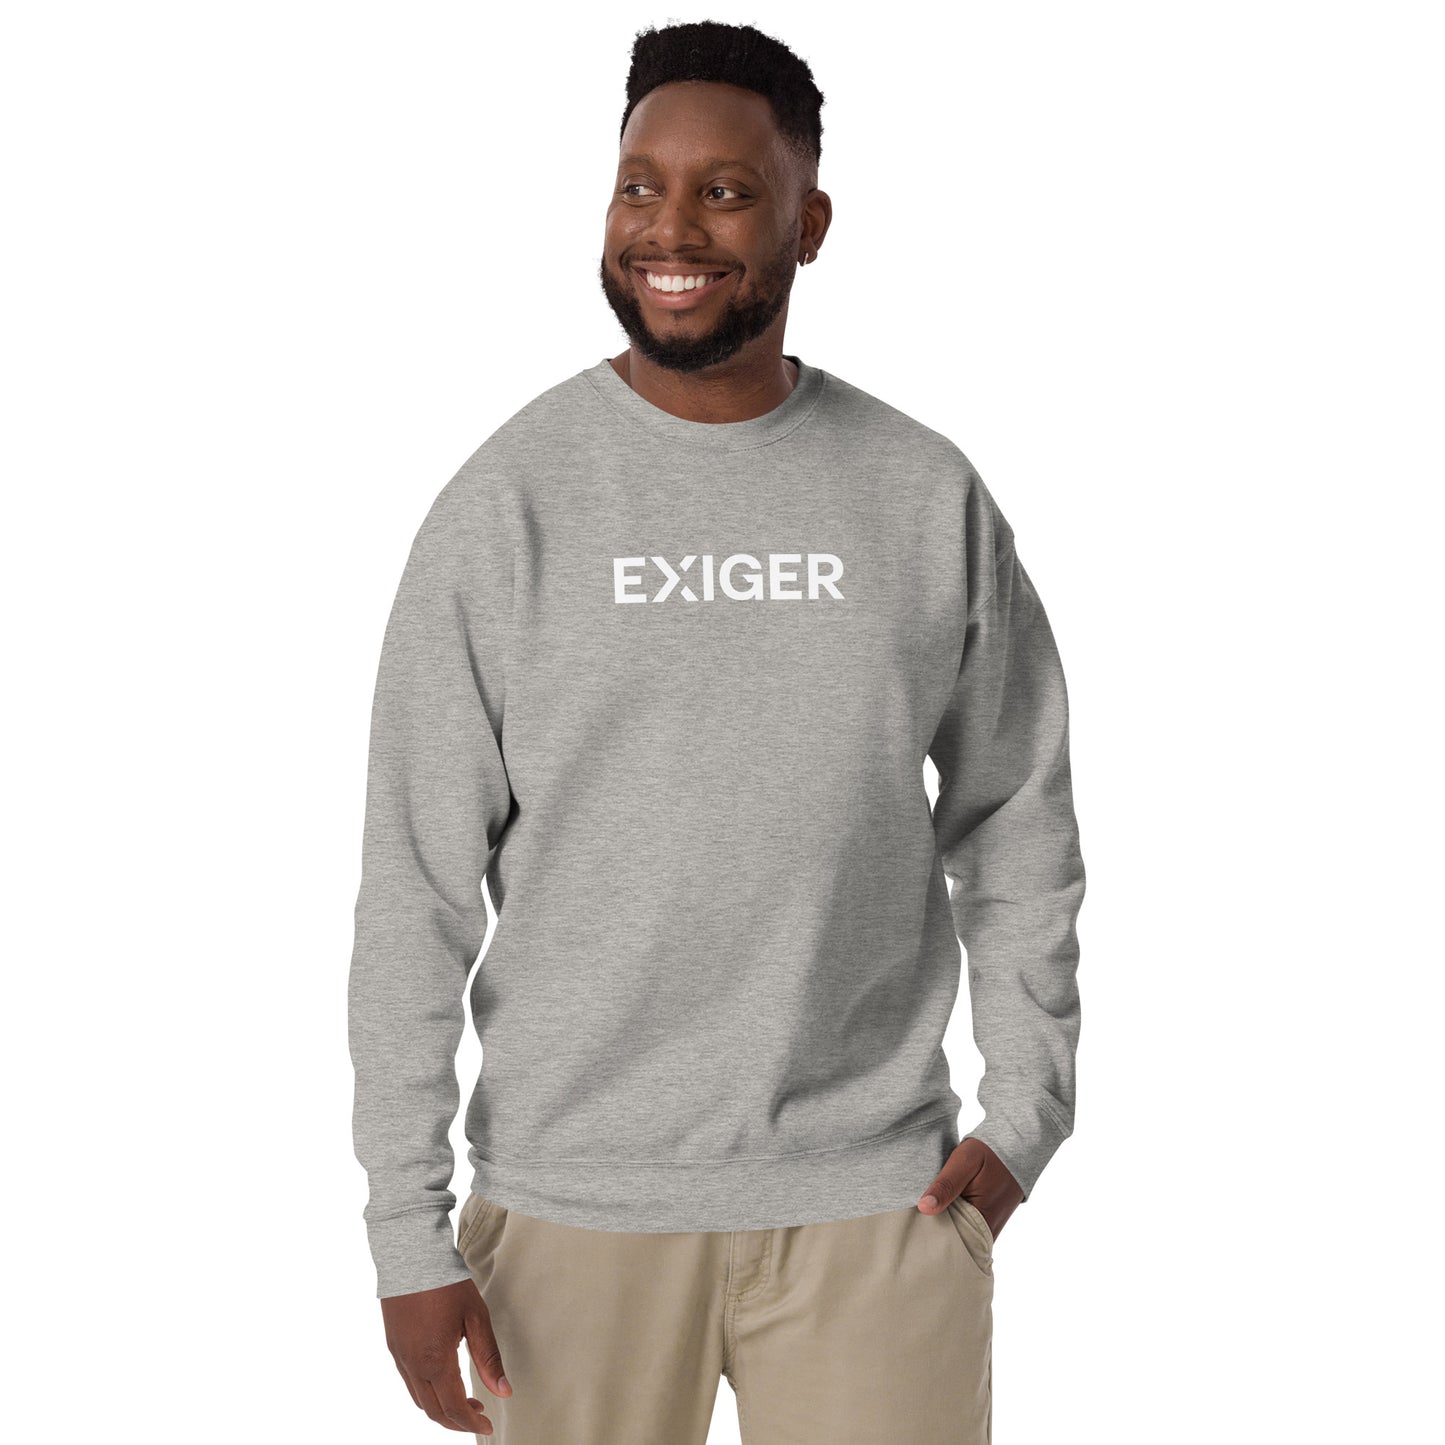 Premium Unisex Sweatshirt